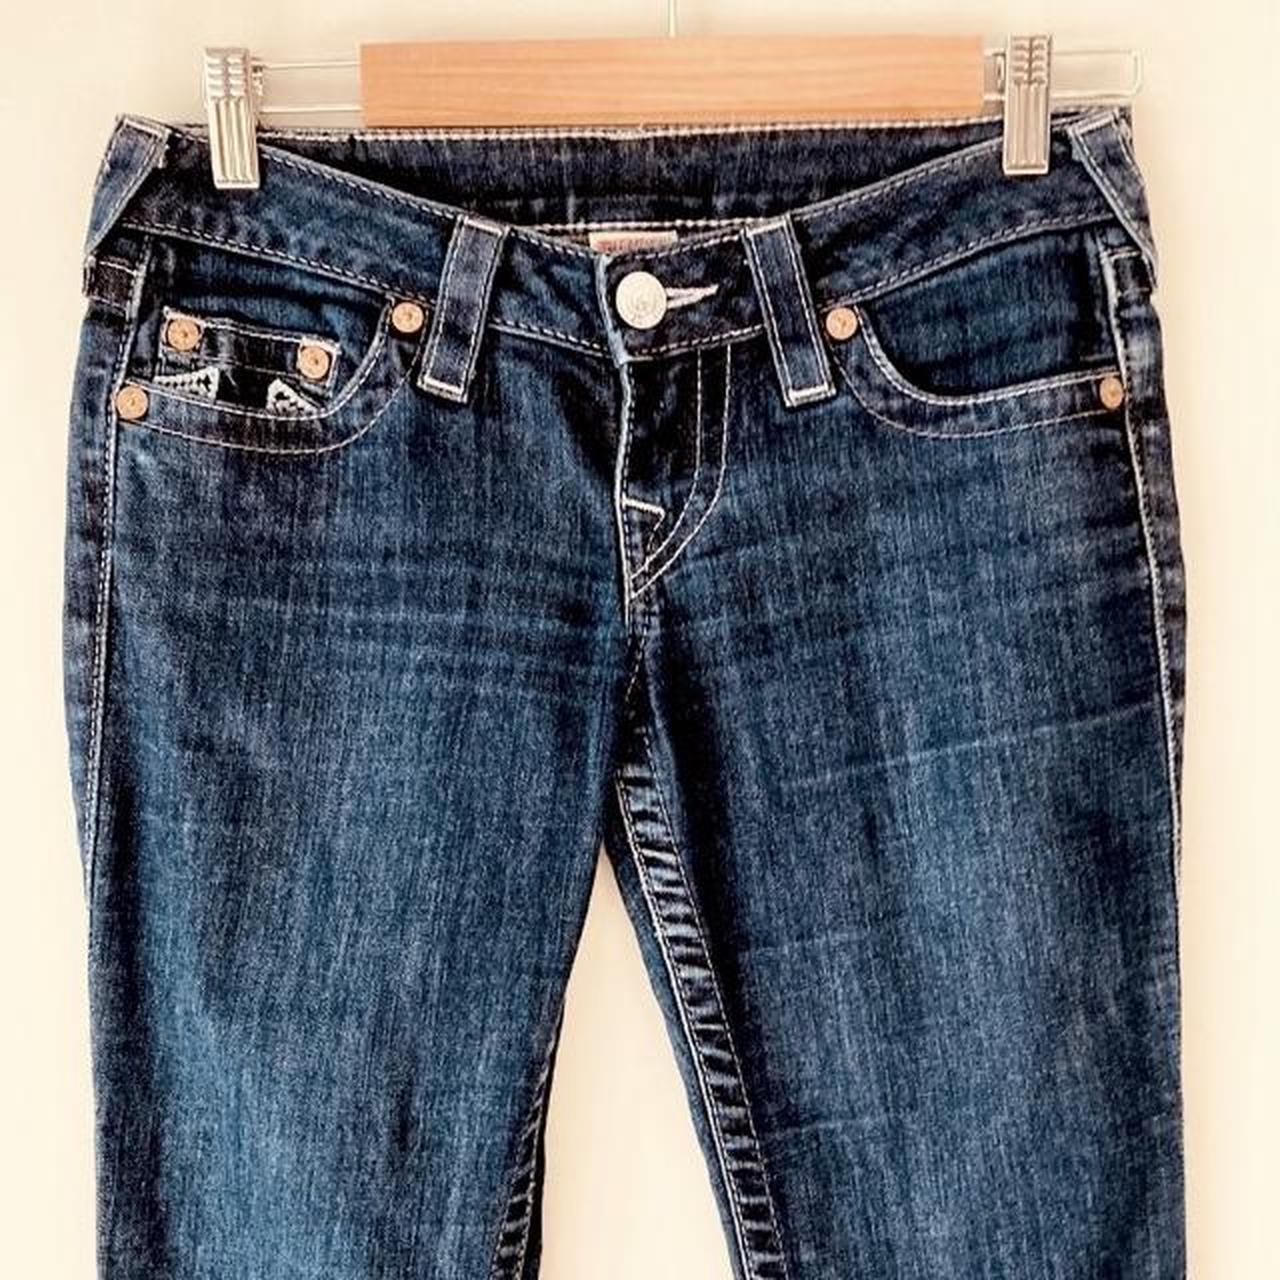 DANGERFIELD size 26 dark denim Jeans embroidered... - Depop